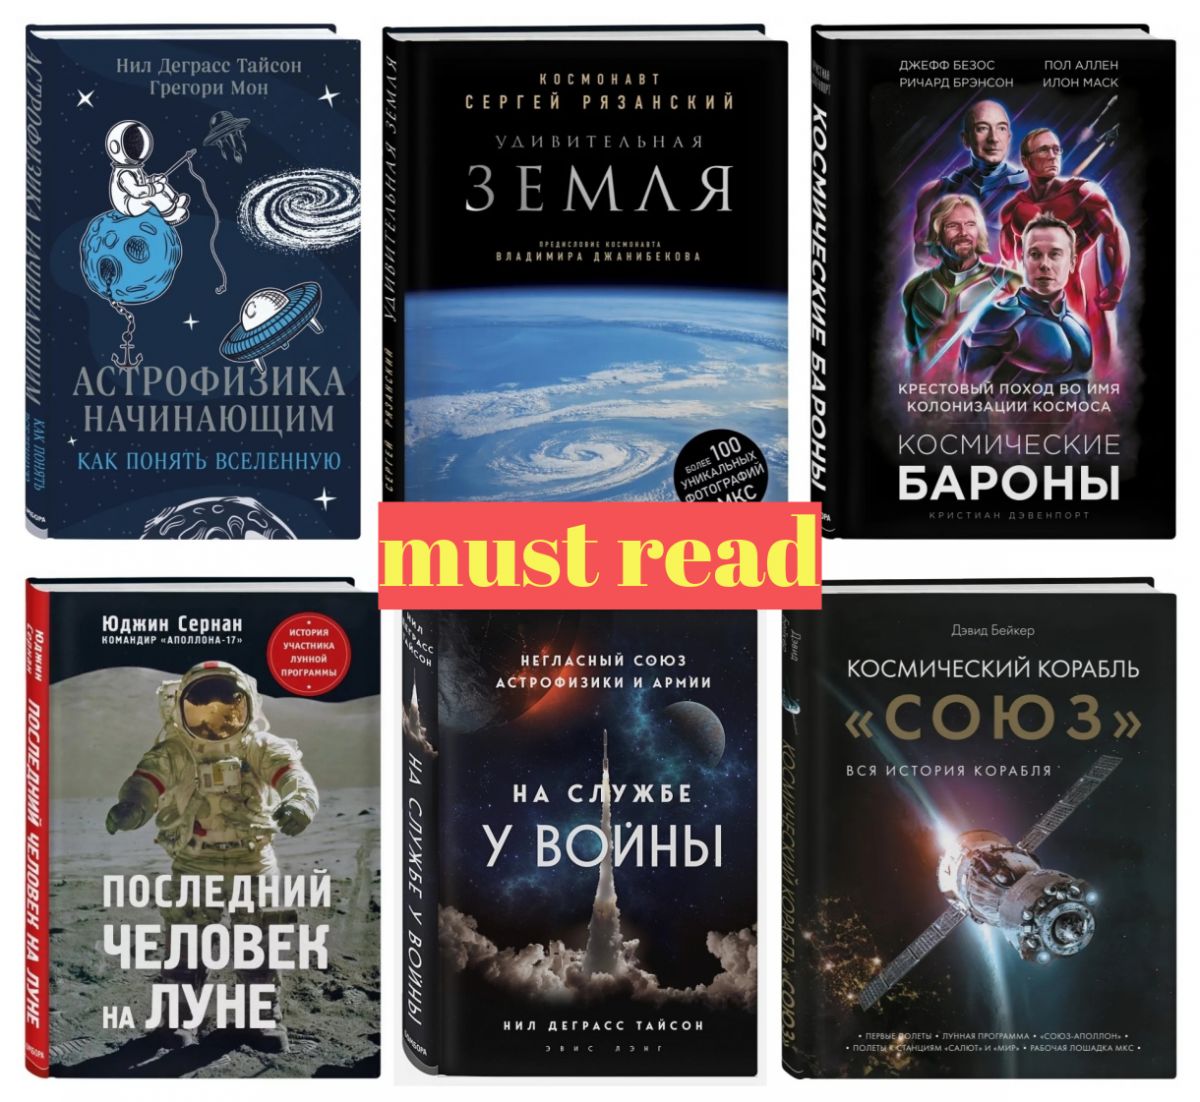 Астрофизика для чайников, космические бароны и быт космонавтов: 7 улетных книг в честь Дня космонавтики